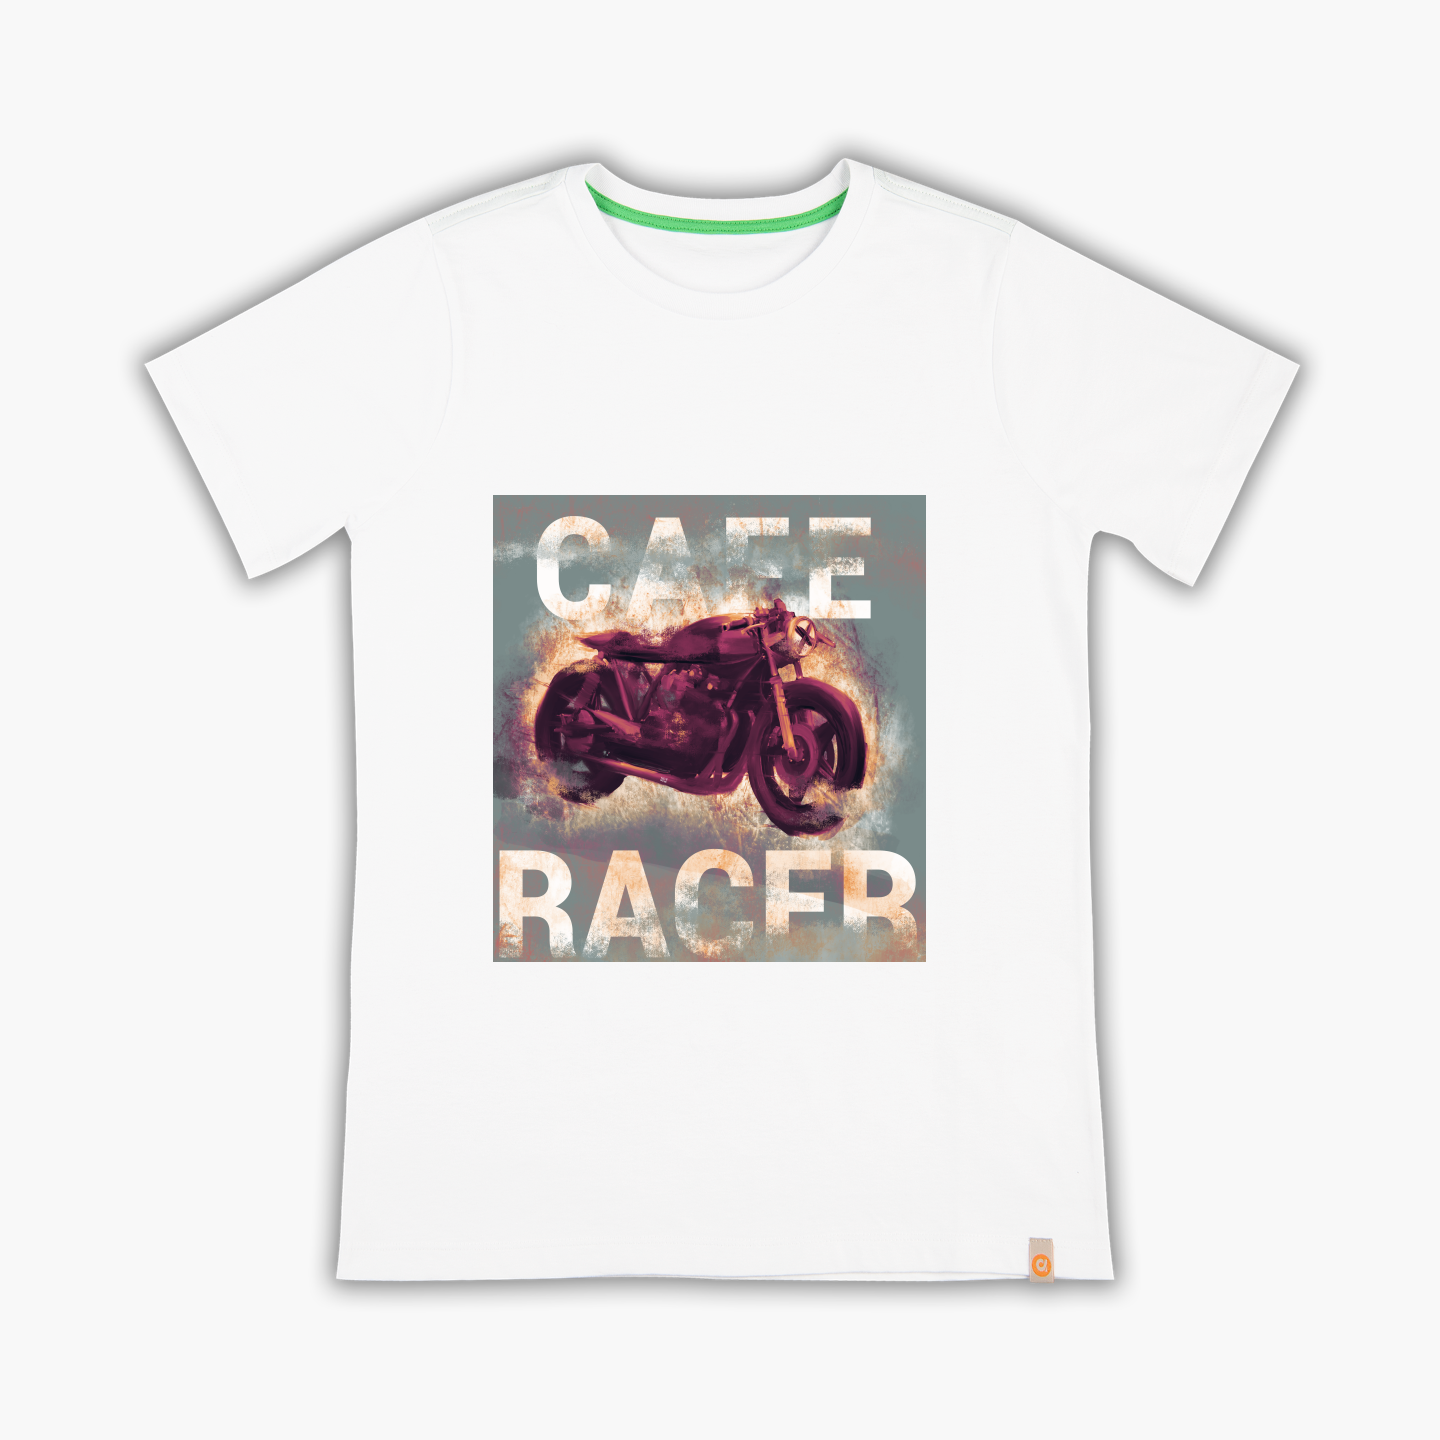 Always cafe racer - Tişört